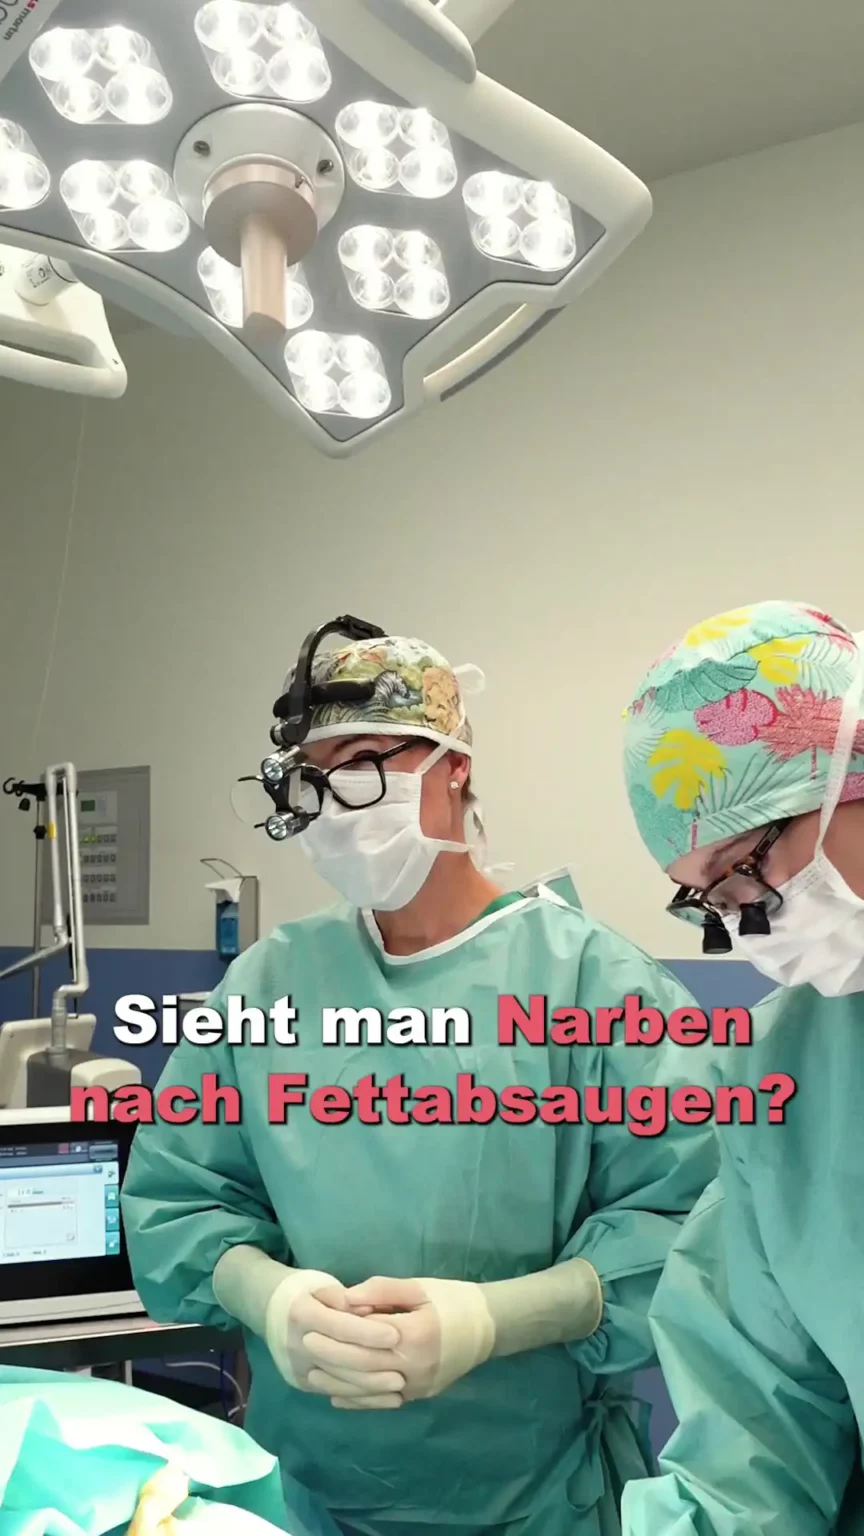 Aufnahme von Dr. Berkei im OP mit dem Text "Sieht man Narben nach Fettabsaugen?".